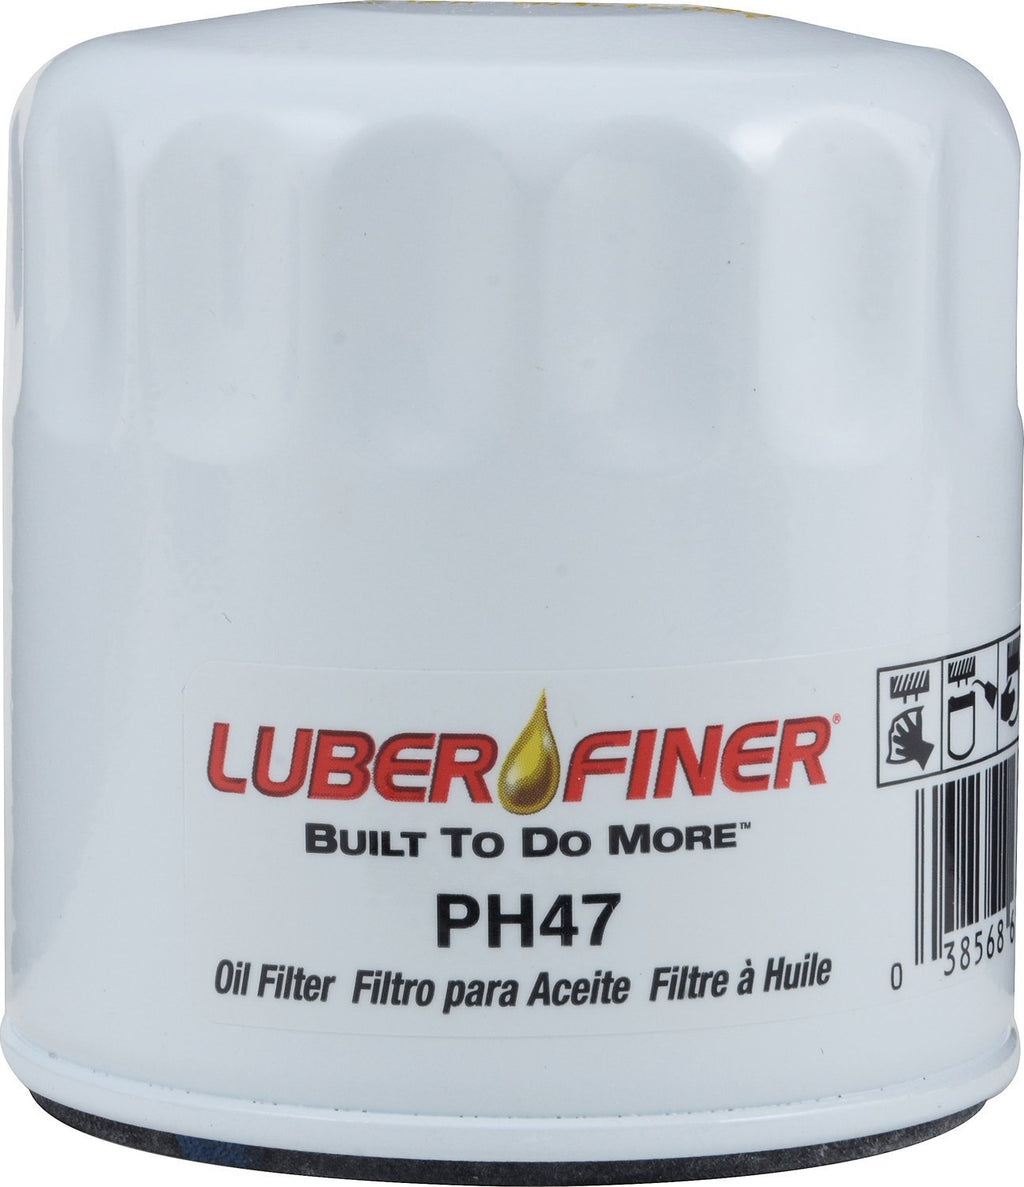  [AUSTRALIA] - Luber-finer PH47 Oil Filter 1 Pack